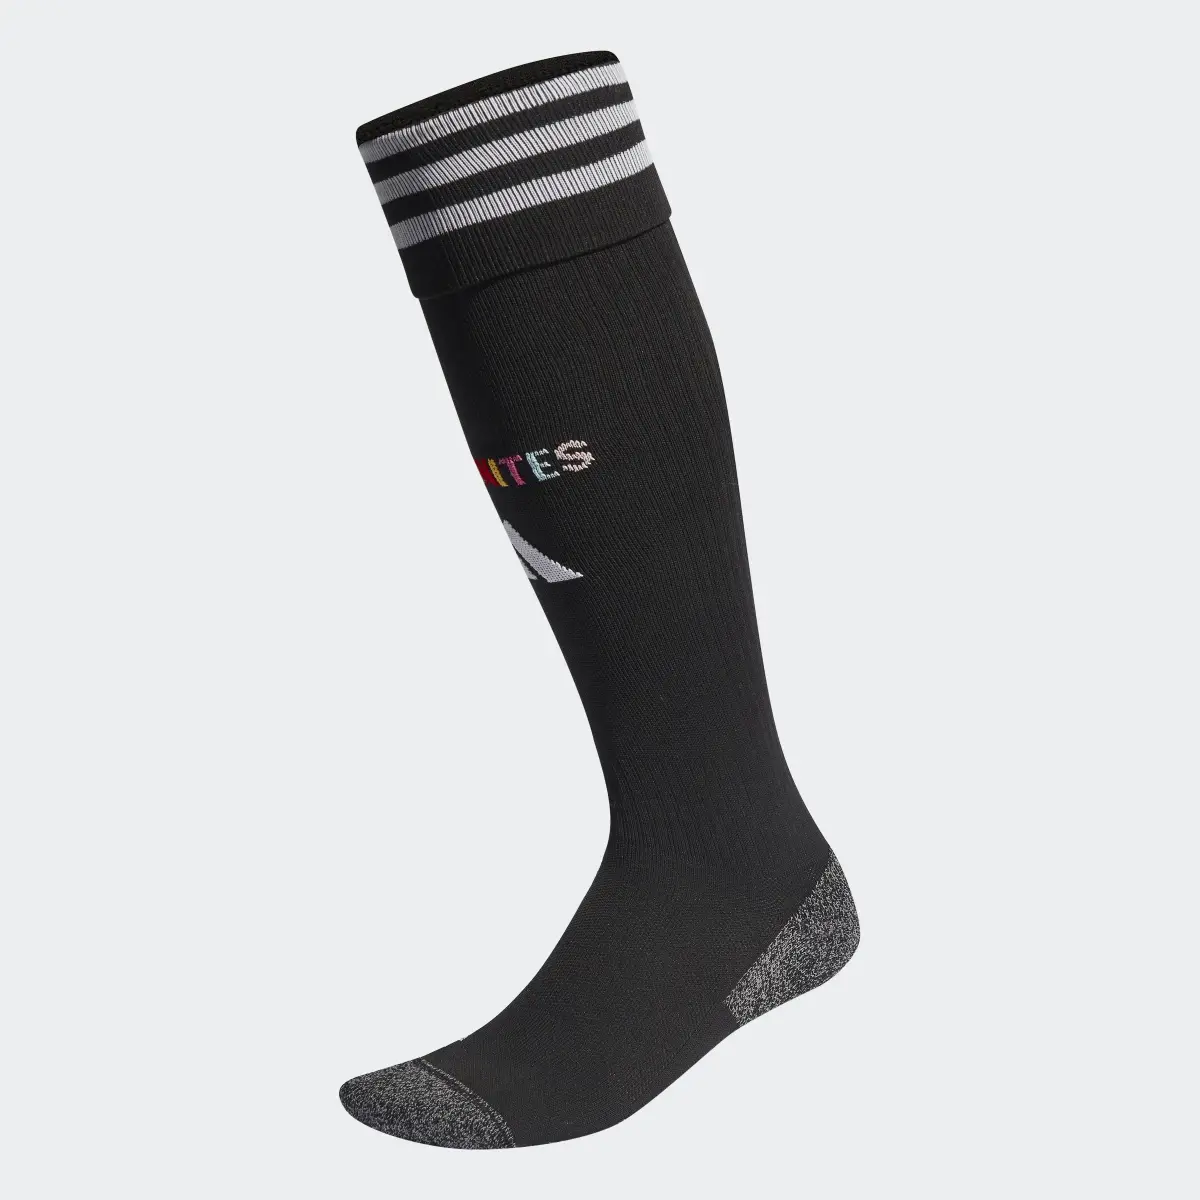 Adidas Pride Socks. 2